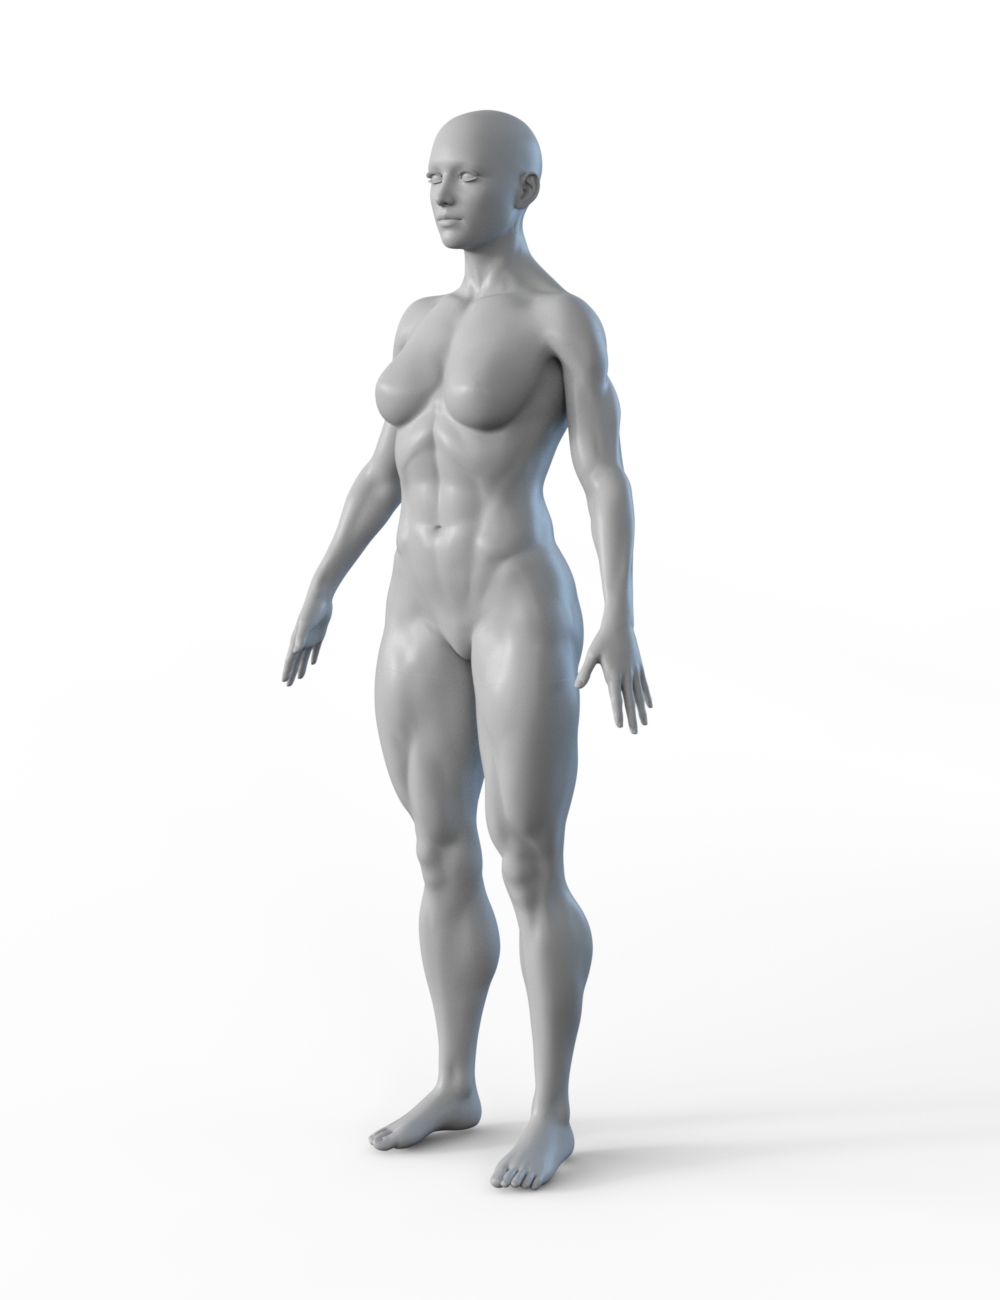 FBX- Base Female Office Wear by: Paleo, 3D Models by Daz 3D